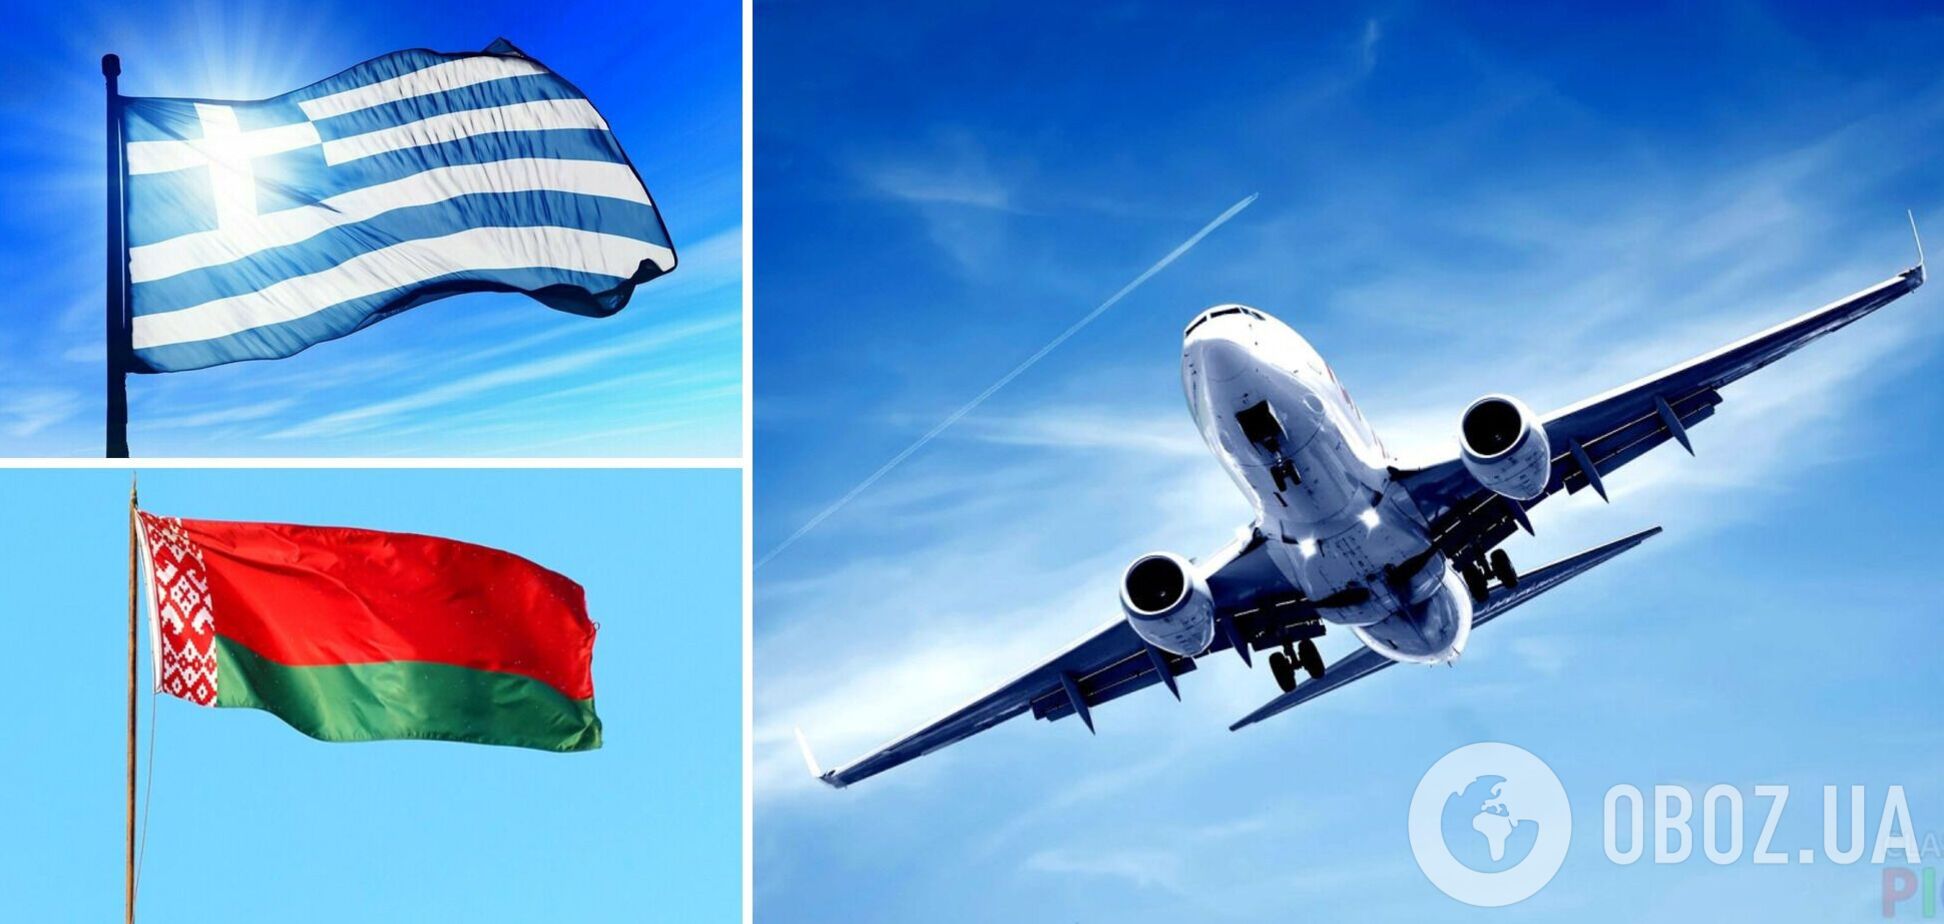 Греція закрила свій повітряний простір для літаків із Білорусі та заборонила авіарейси до республіки — ЗМІ